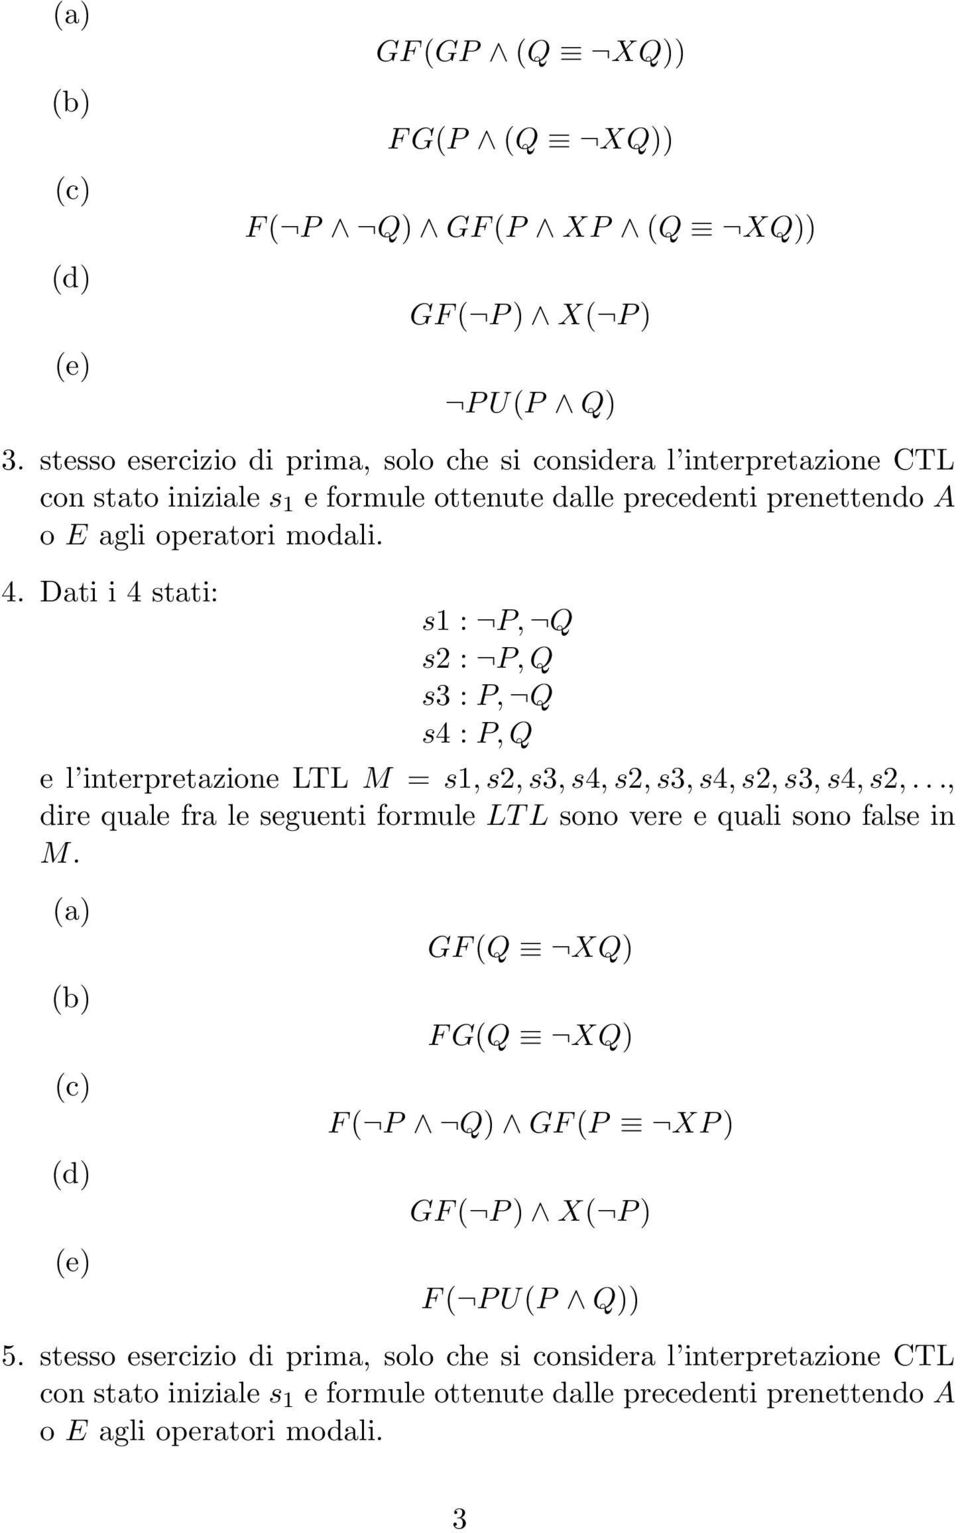 Dati i 4 stati: e l interpretazione LTL M = s1, s2, s3, s4, s2, s3, s4, s2, s3, s4, s2,..., dire quale fra le seguenti formule LT L sono vere e quali sono false in M.